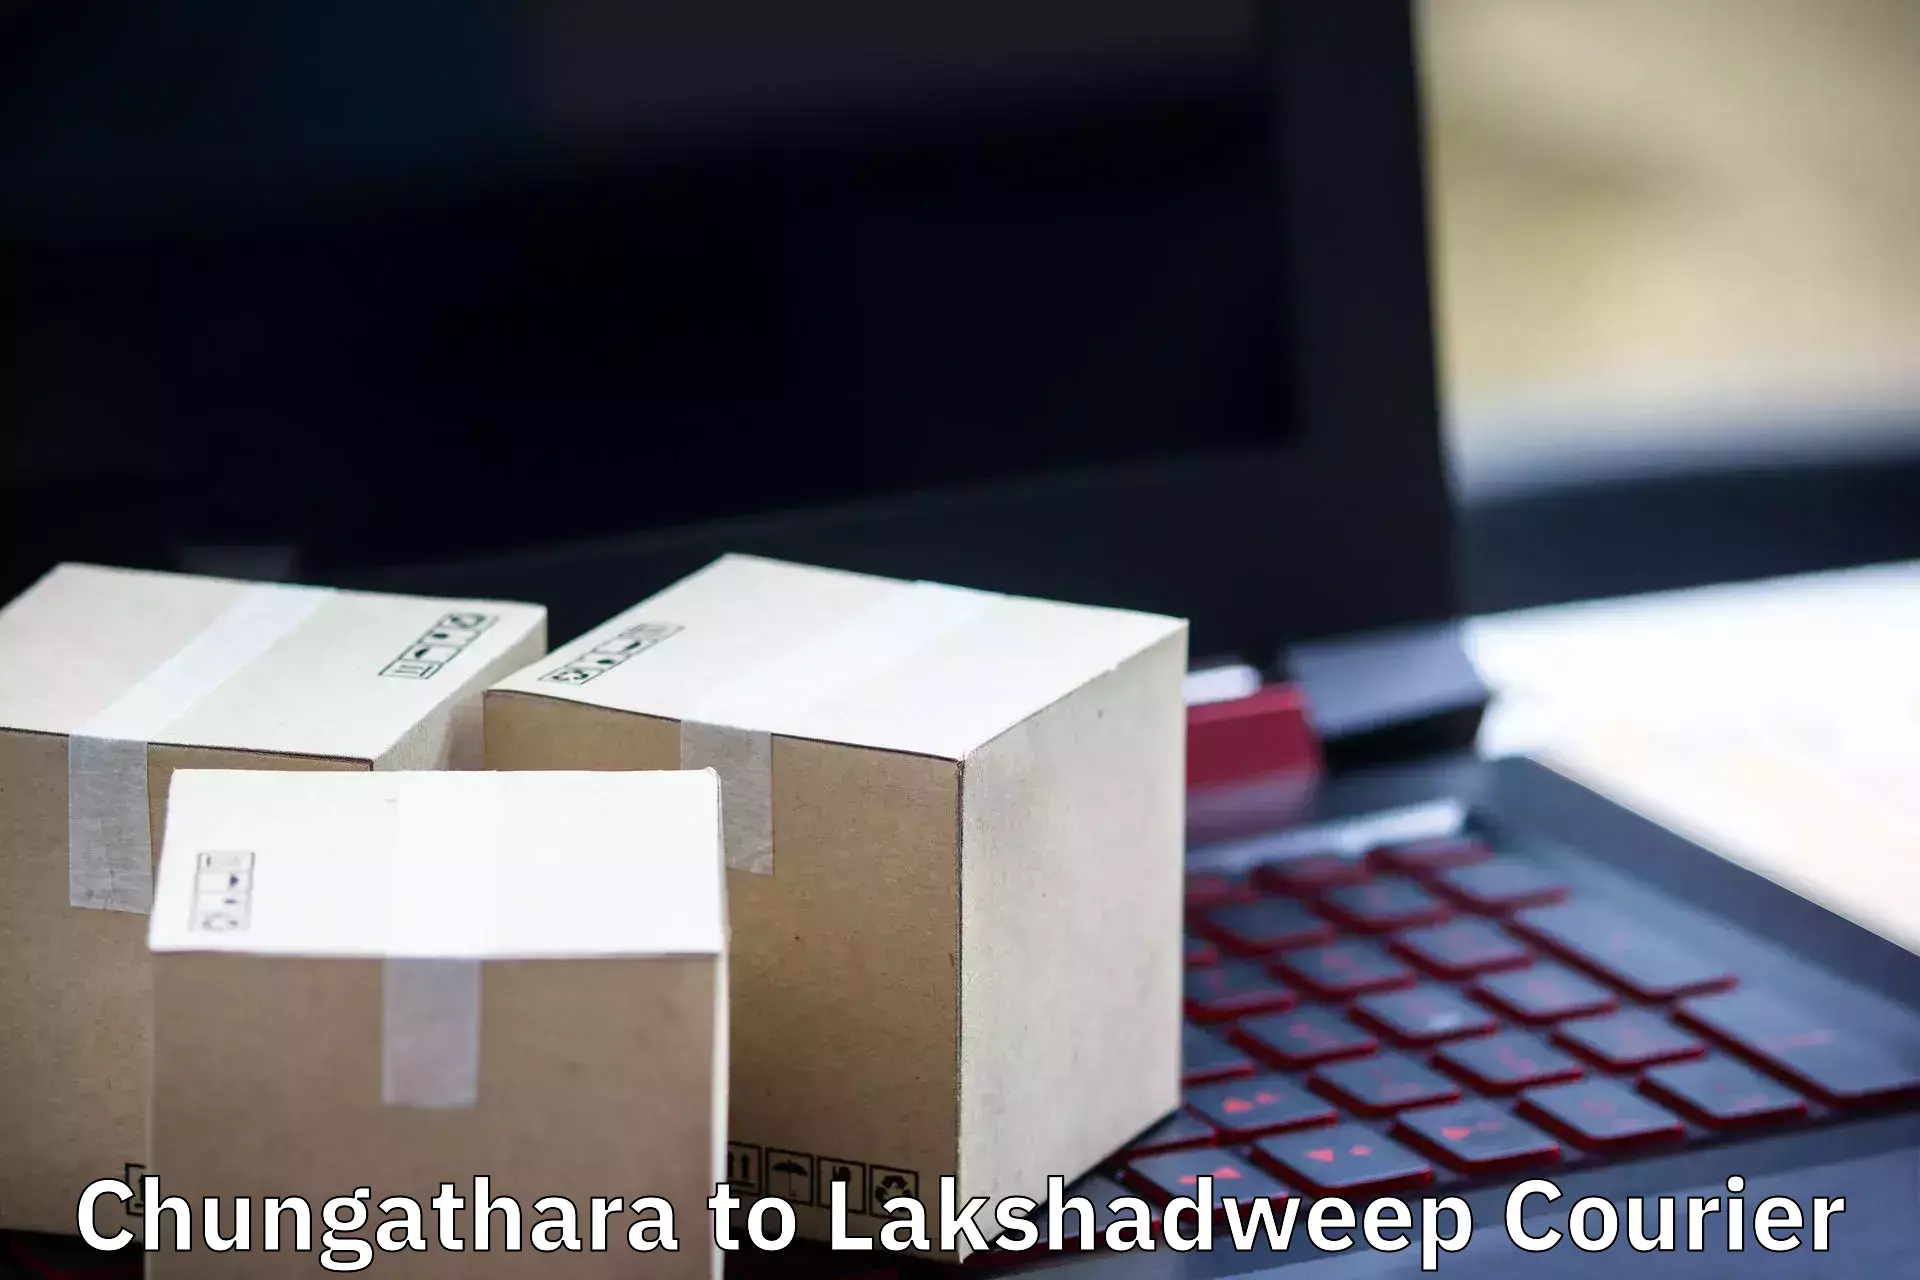 Furniture shipping services Chungathara to Lakshadweep